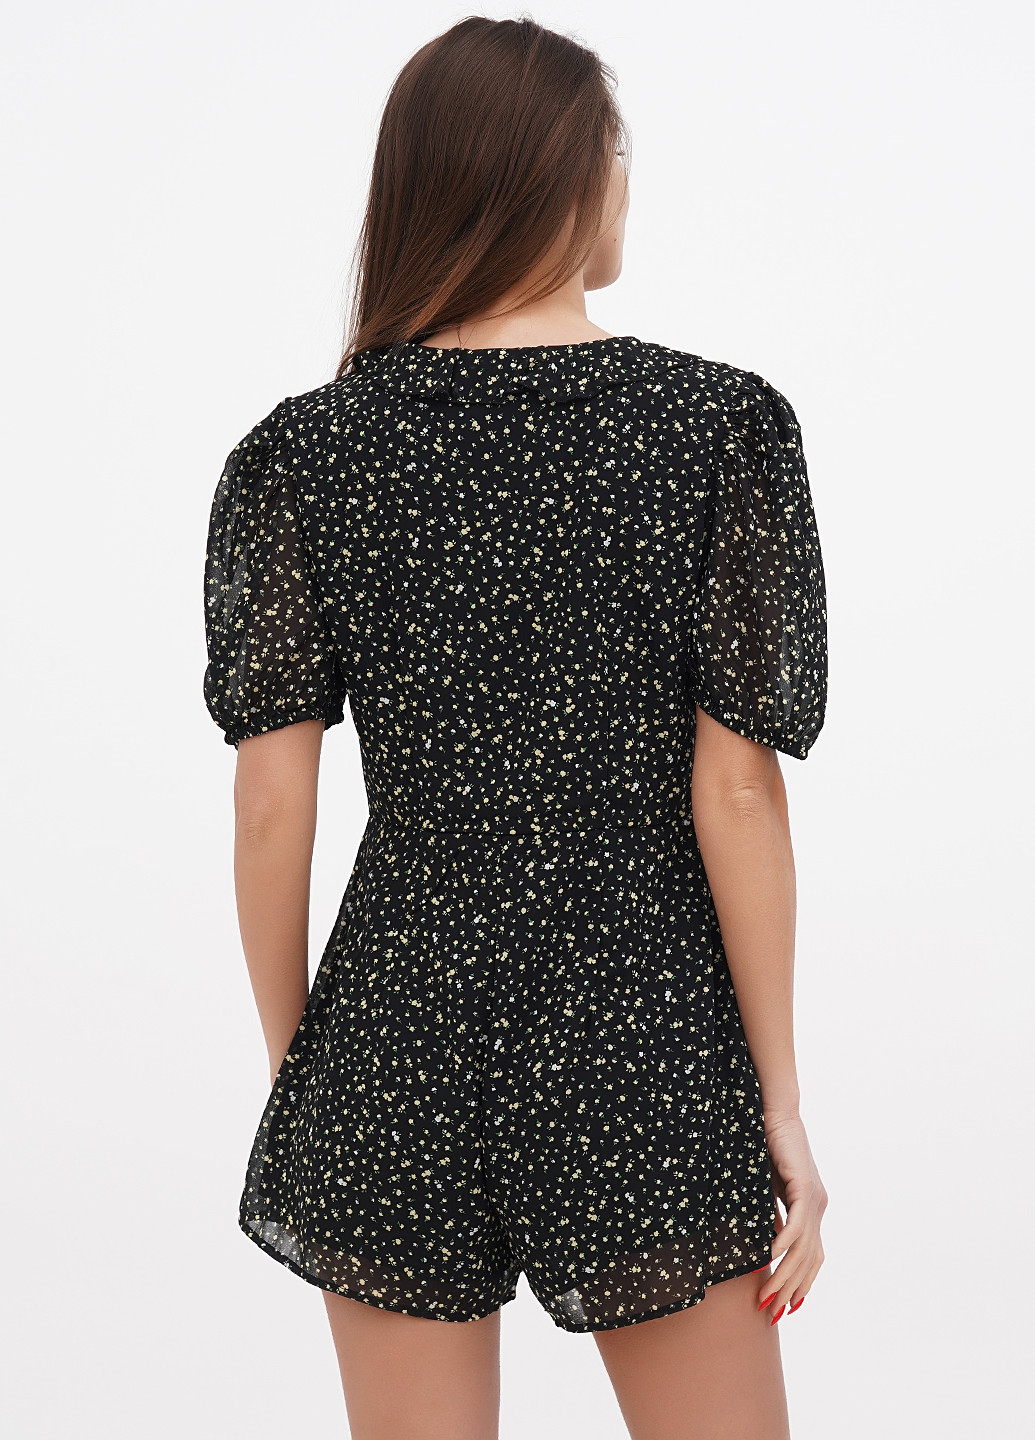 Комбинезон H&M комбинезон-шорты цветочный чёрный кэжуал полиэстер